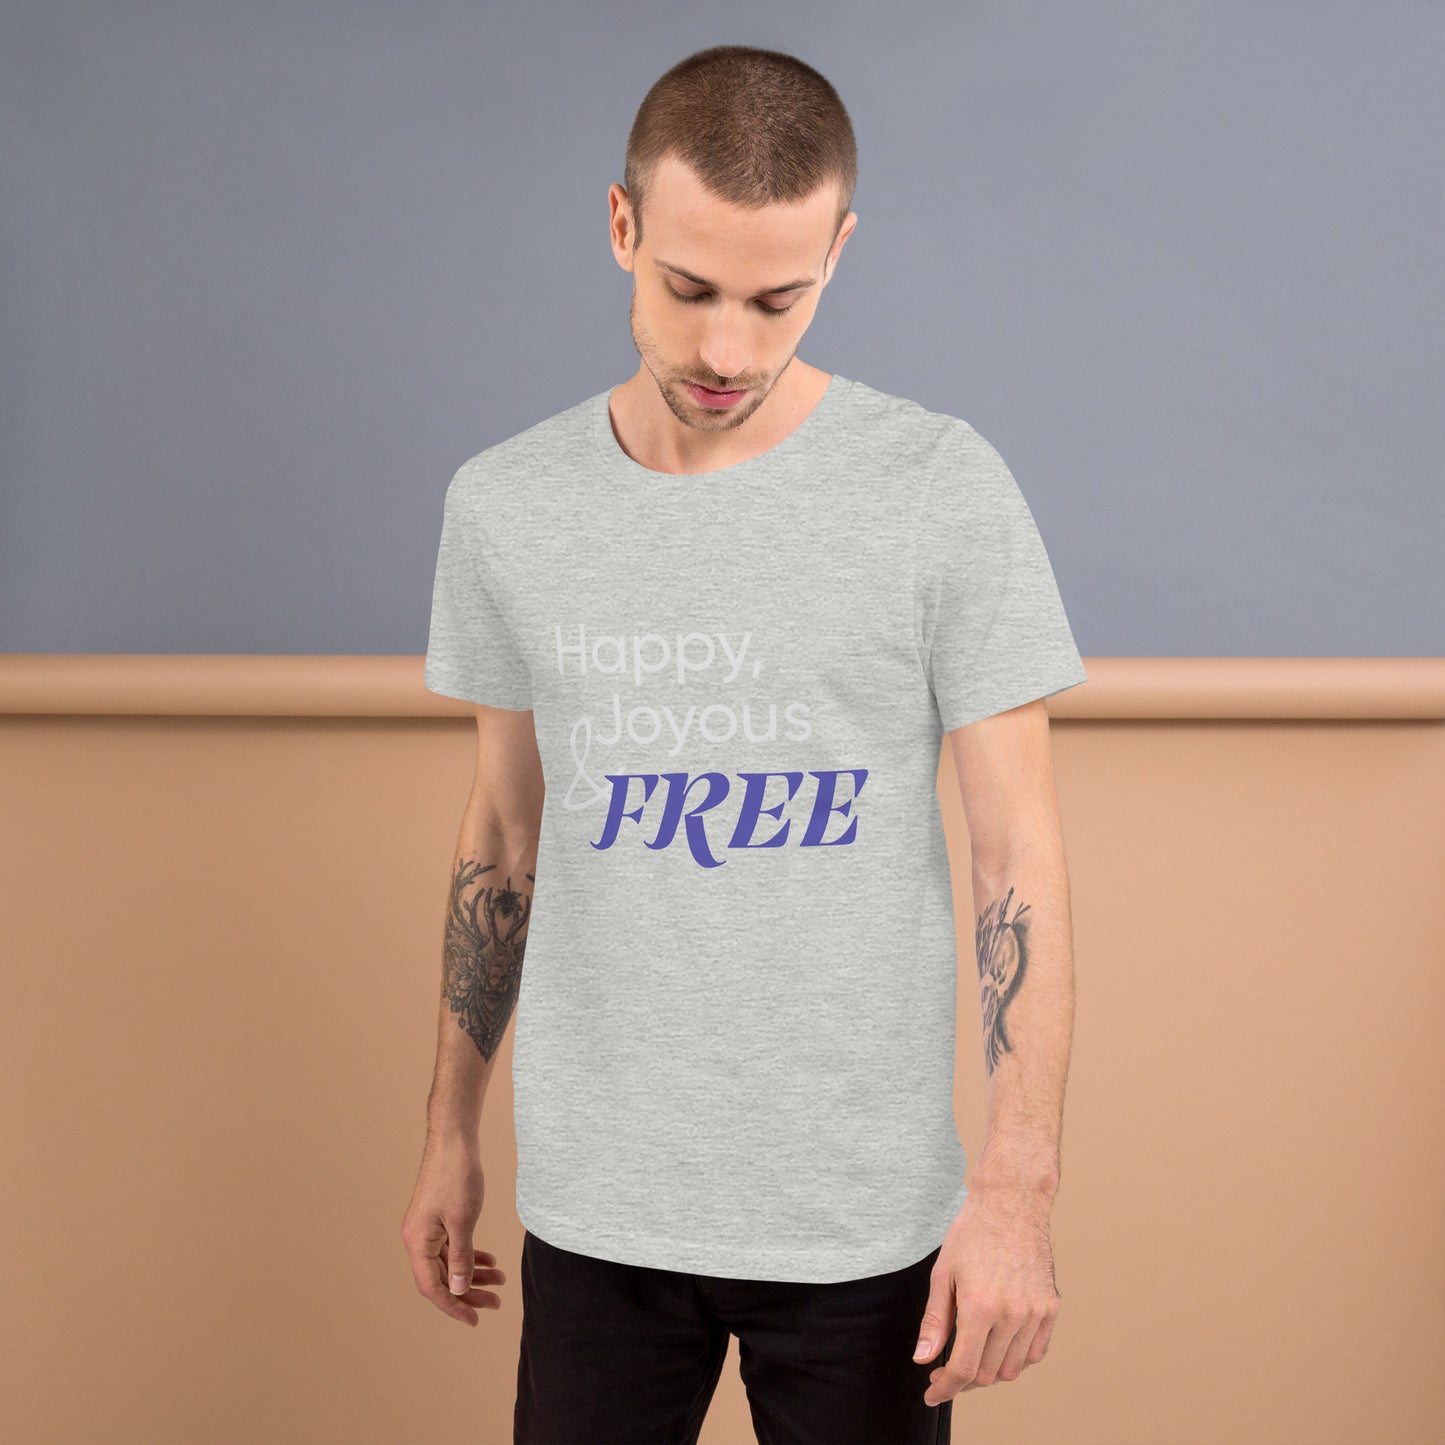 Happy Joyous And Free Unisex T-Shirt